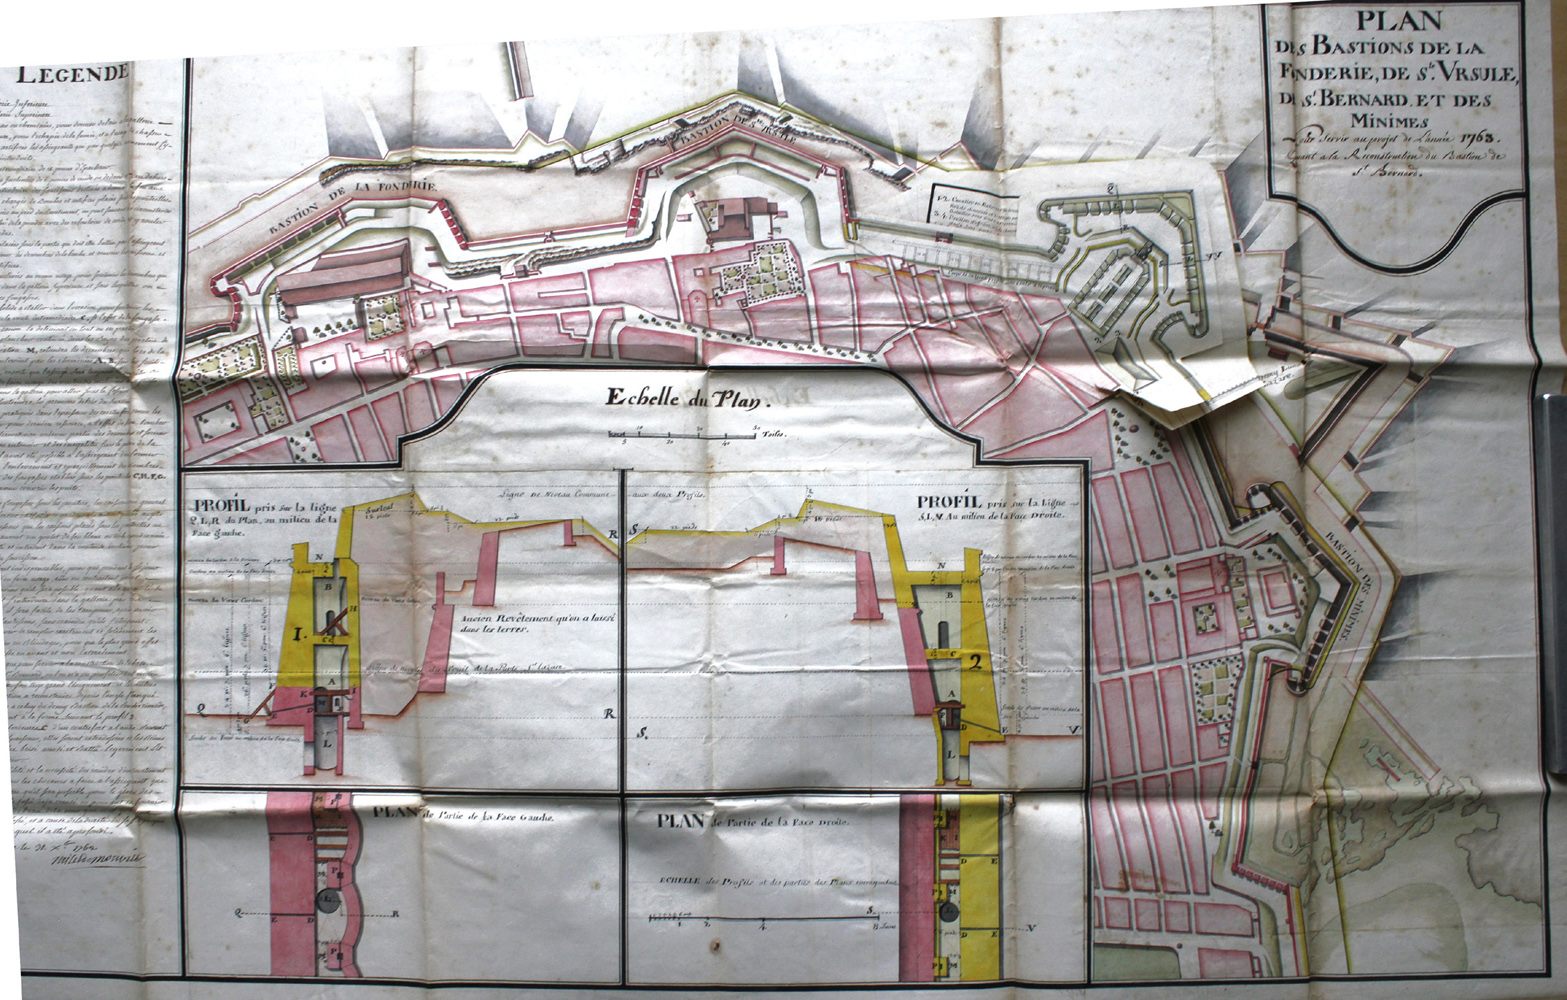 Plan des Bastions de la Fonderie, de Ste-Ursule, de St-Bernard et des Minimes pour servir au projet de l'année 1763. 1762.